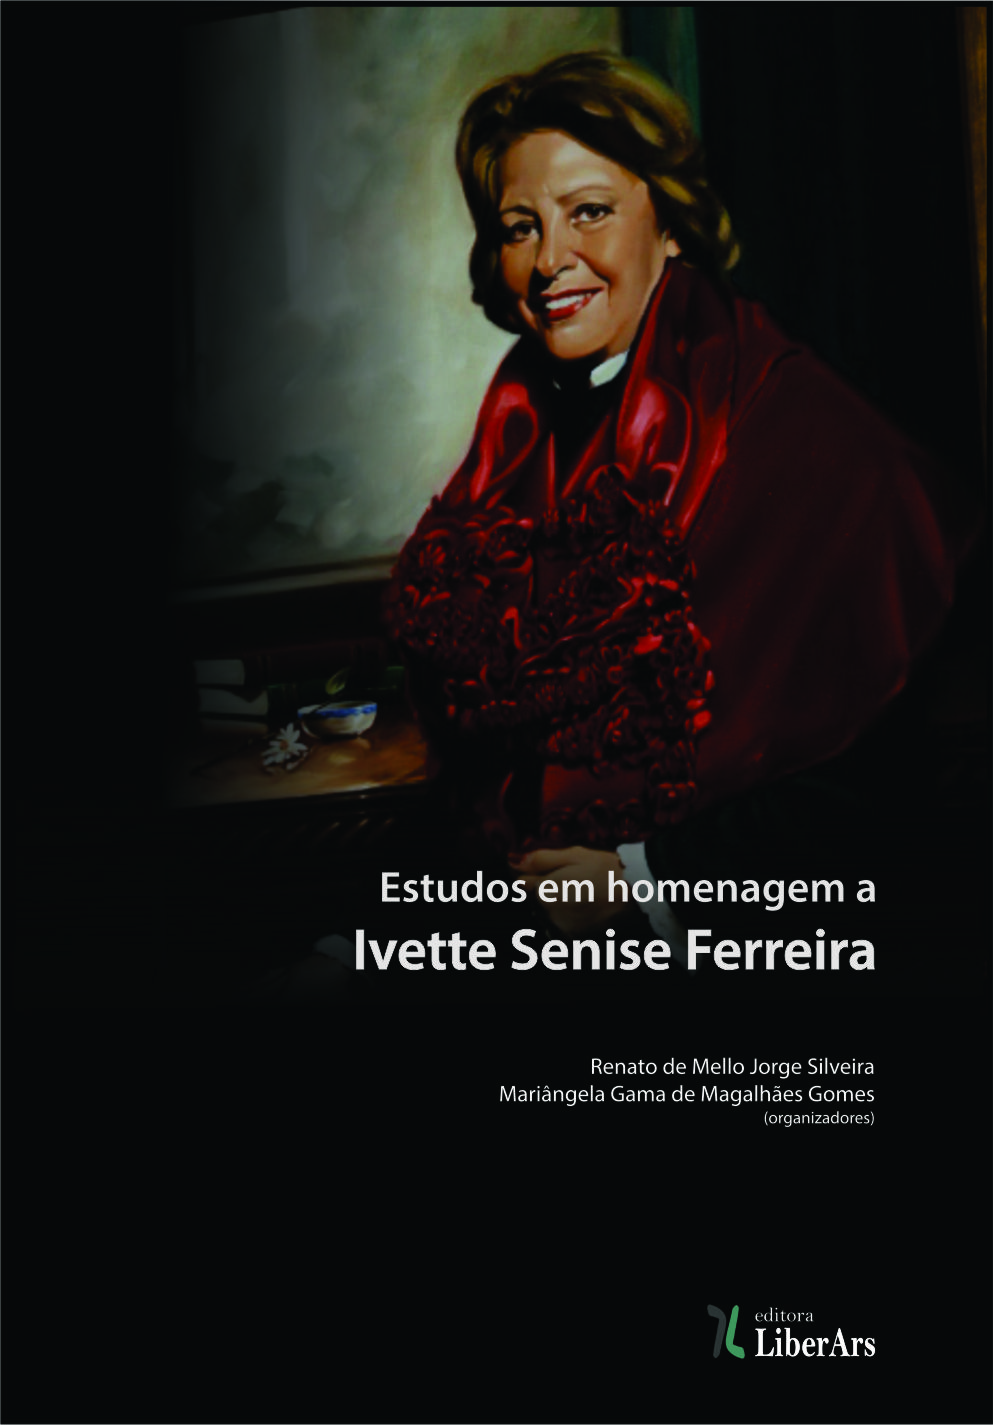 Estudos em homenagem a Ivette Senise, livro de Renato de Mello Jorge Silveira, Mariângela Gama de Magalhães Gomes